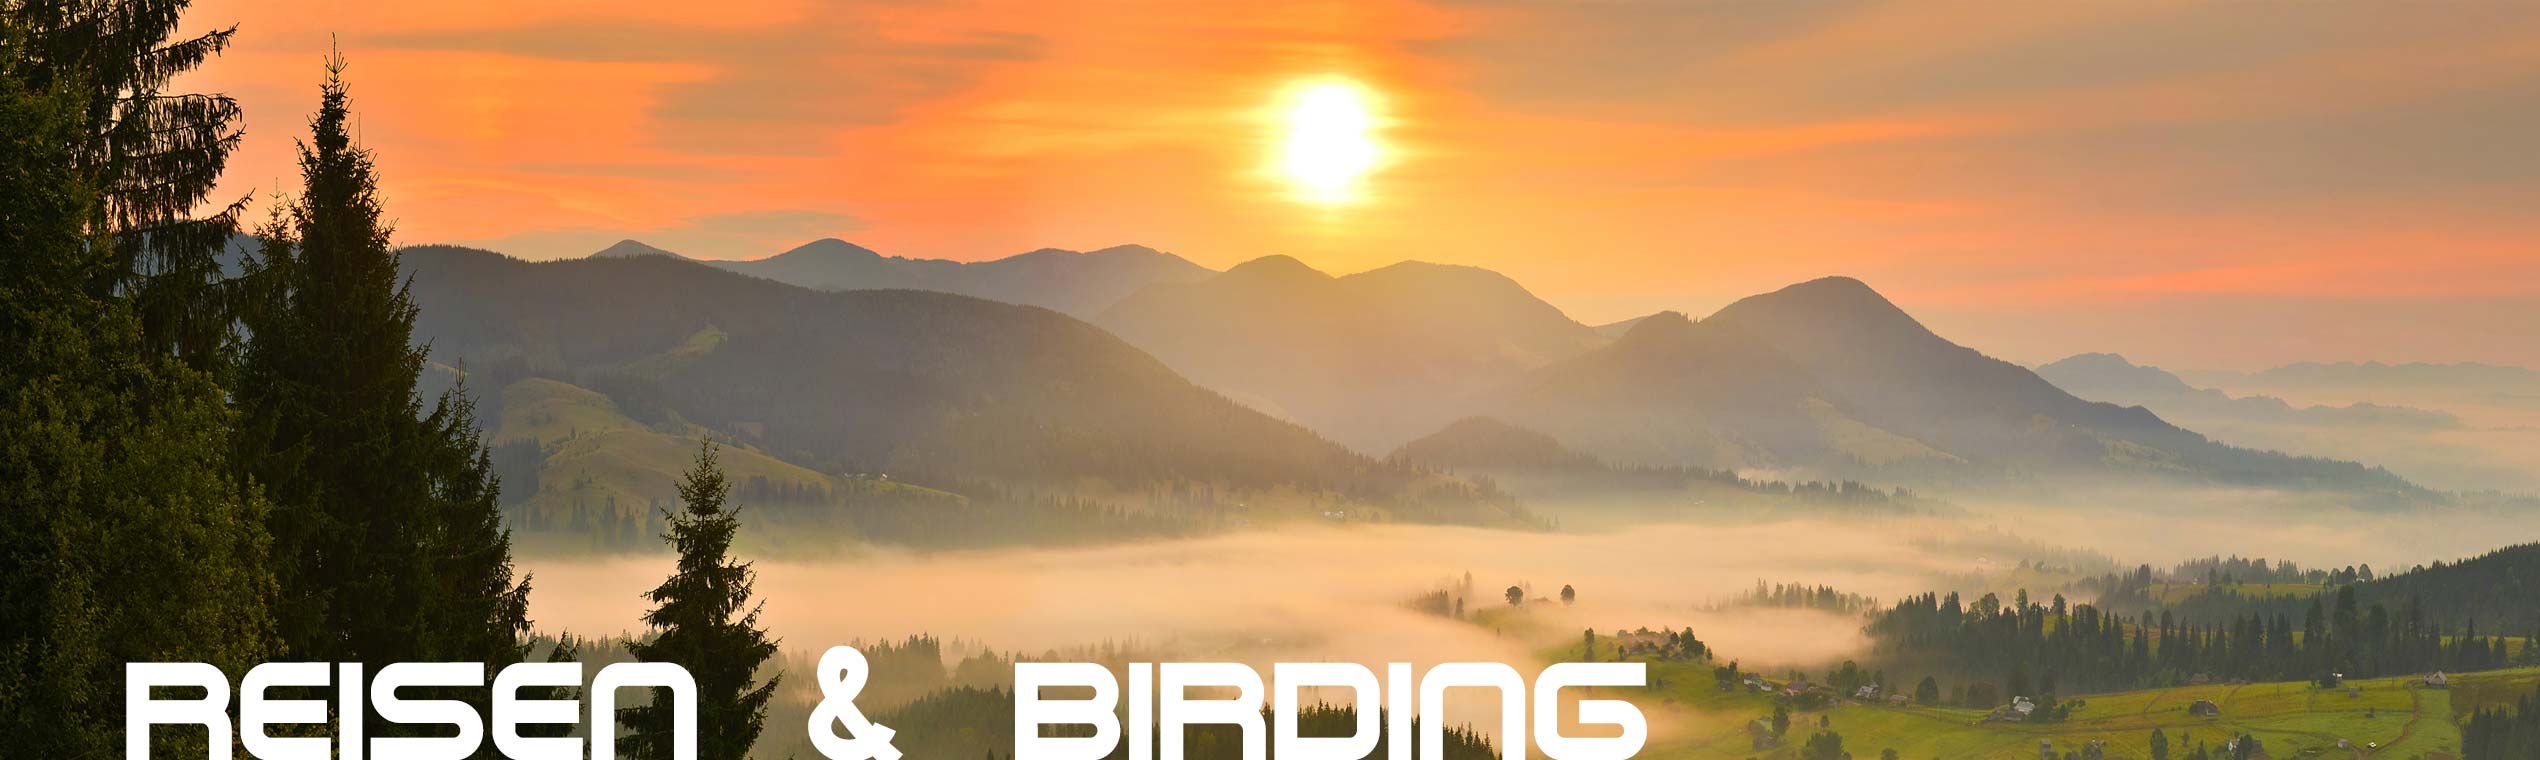 Ferngläser für Reisen & Birding